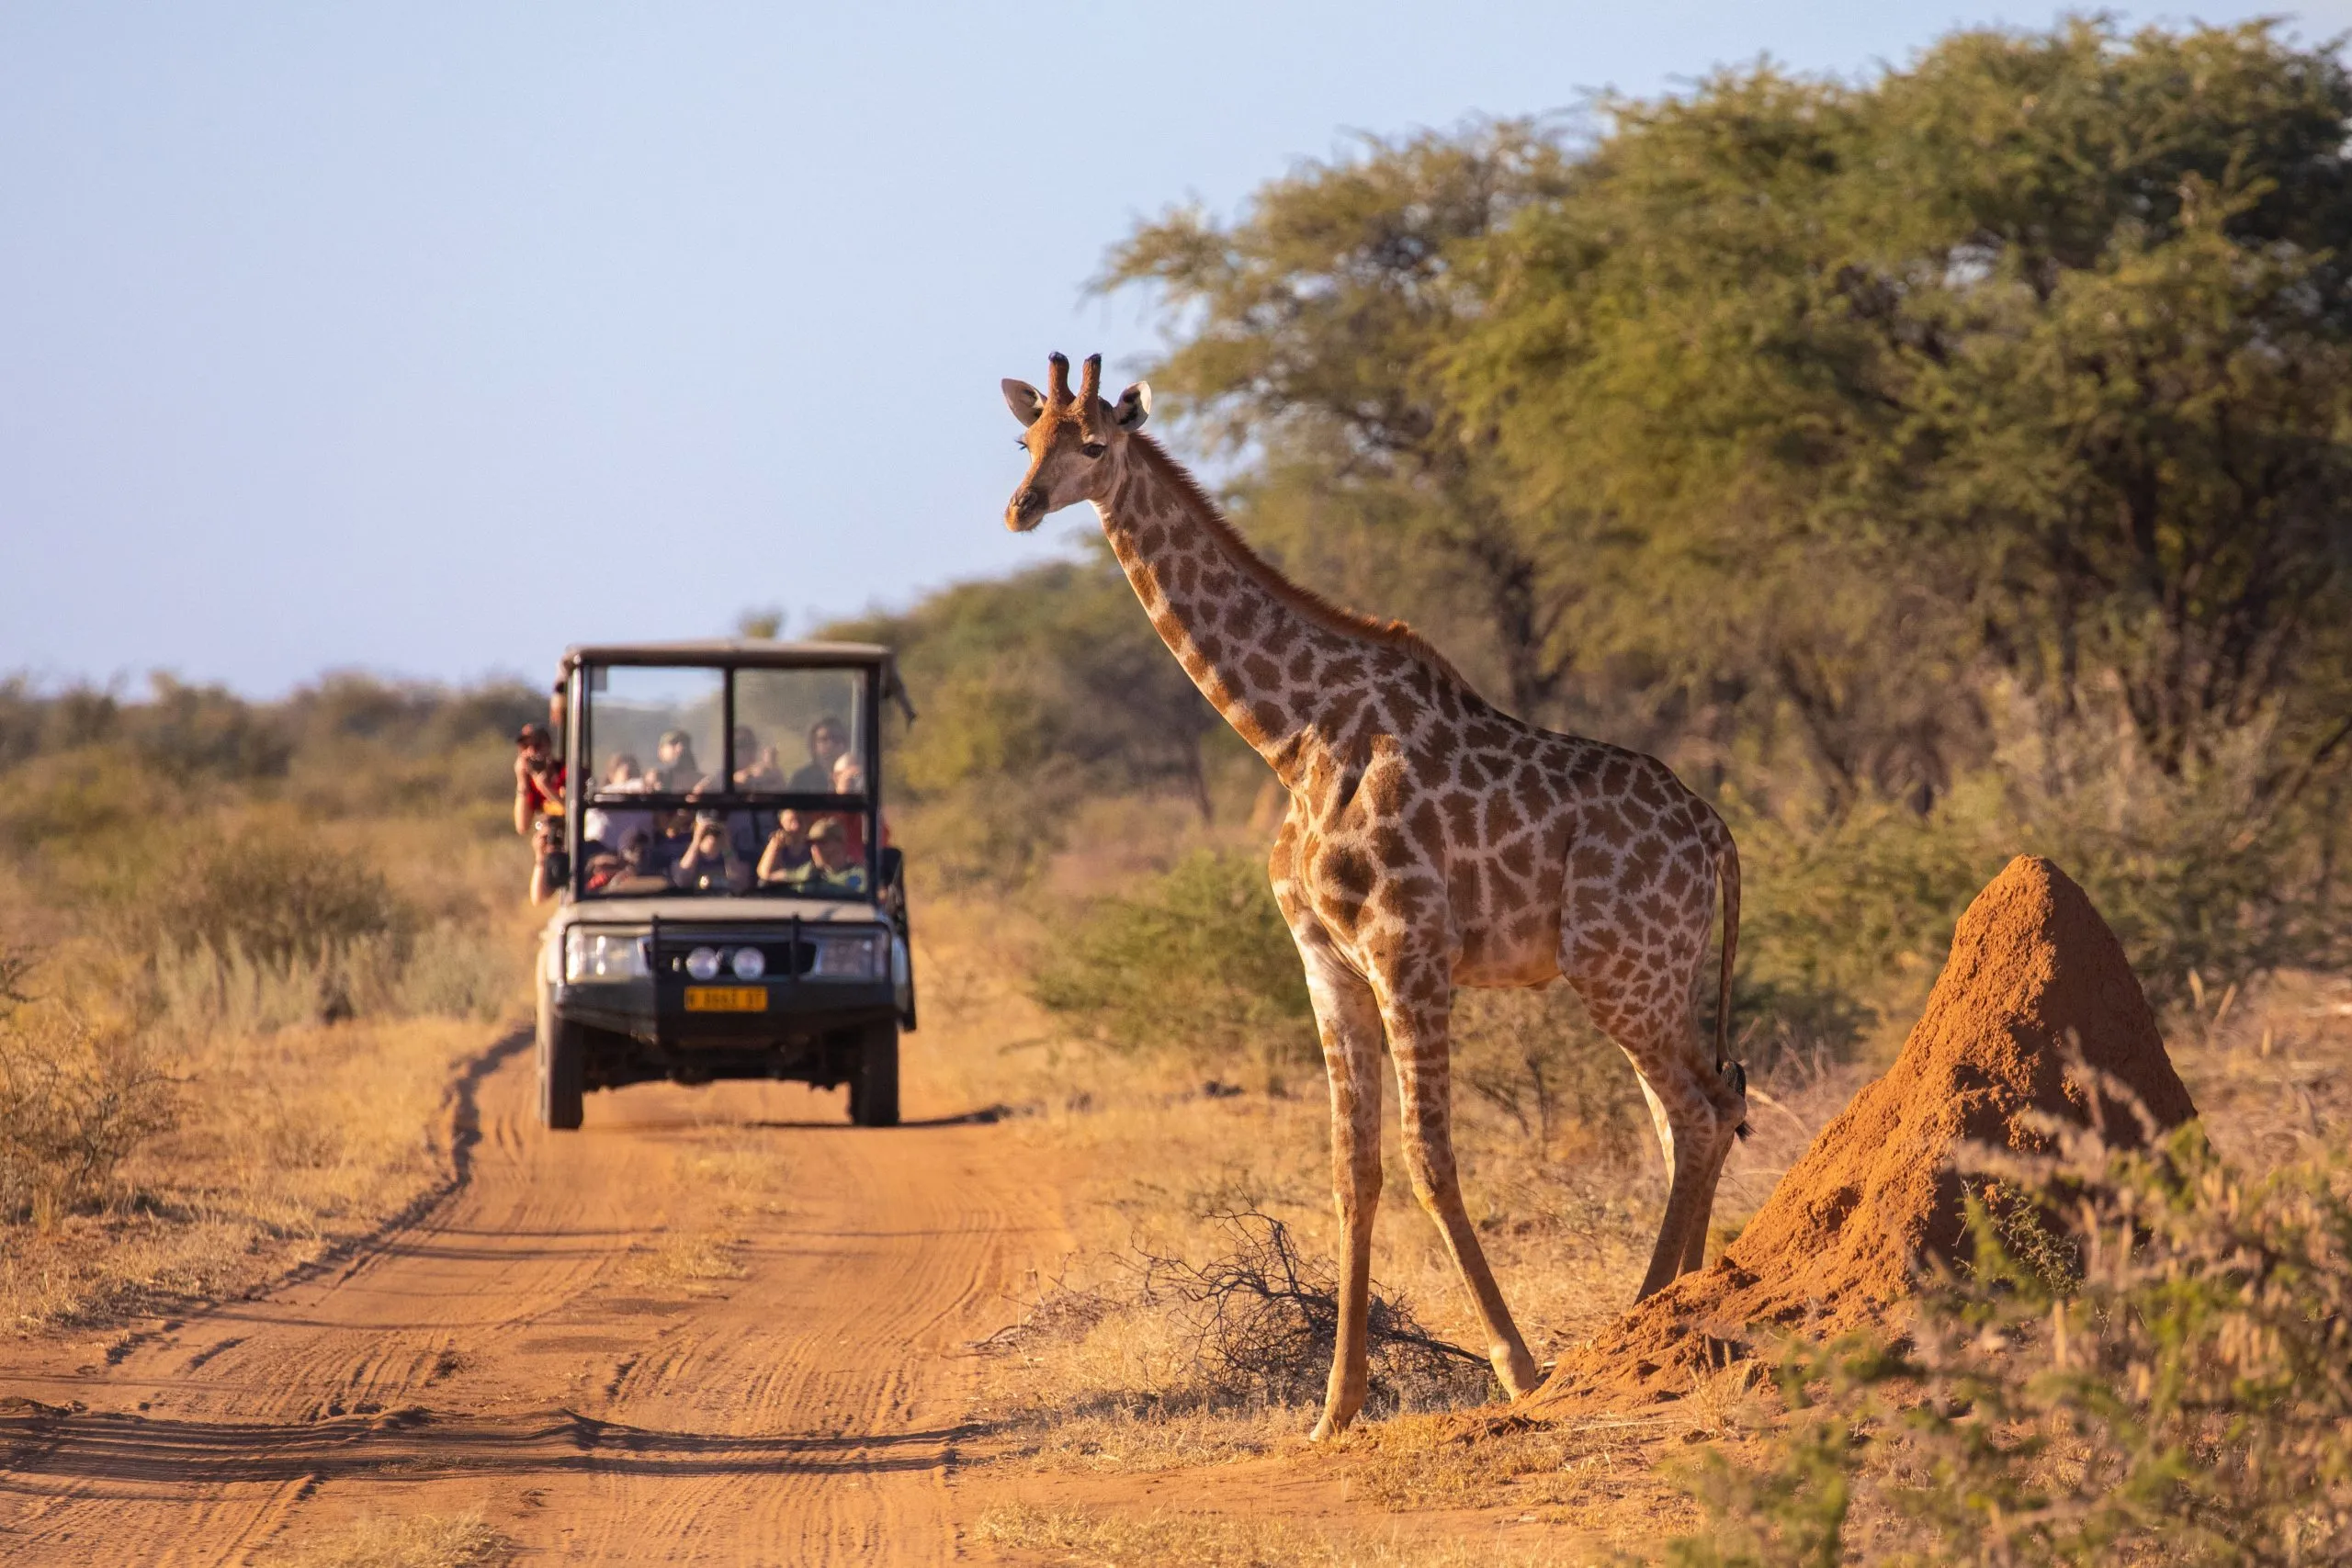 Una jirafa salvaje cruza una carretera africana por delante de un vehículo de safari de turistas